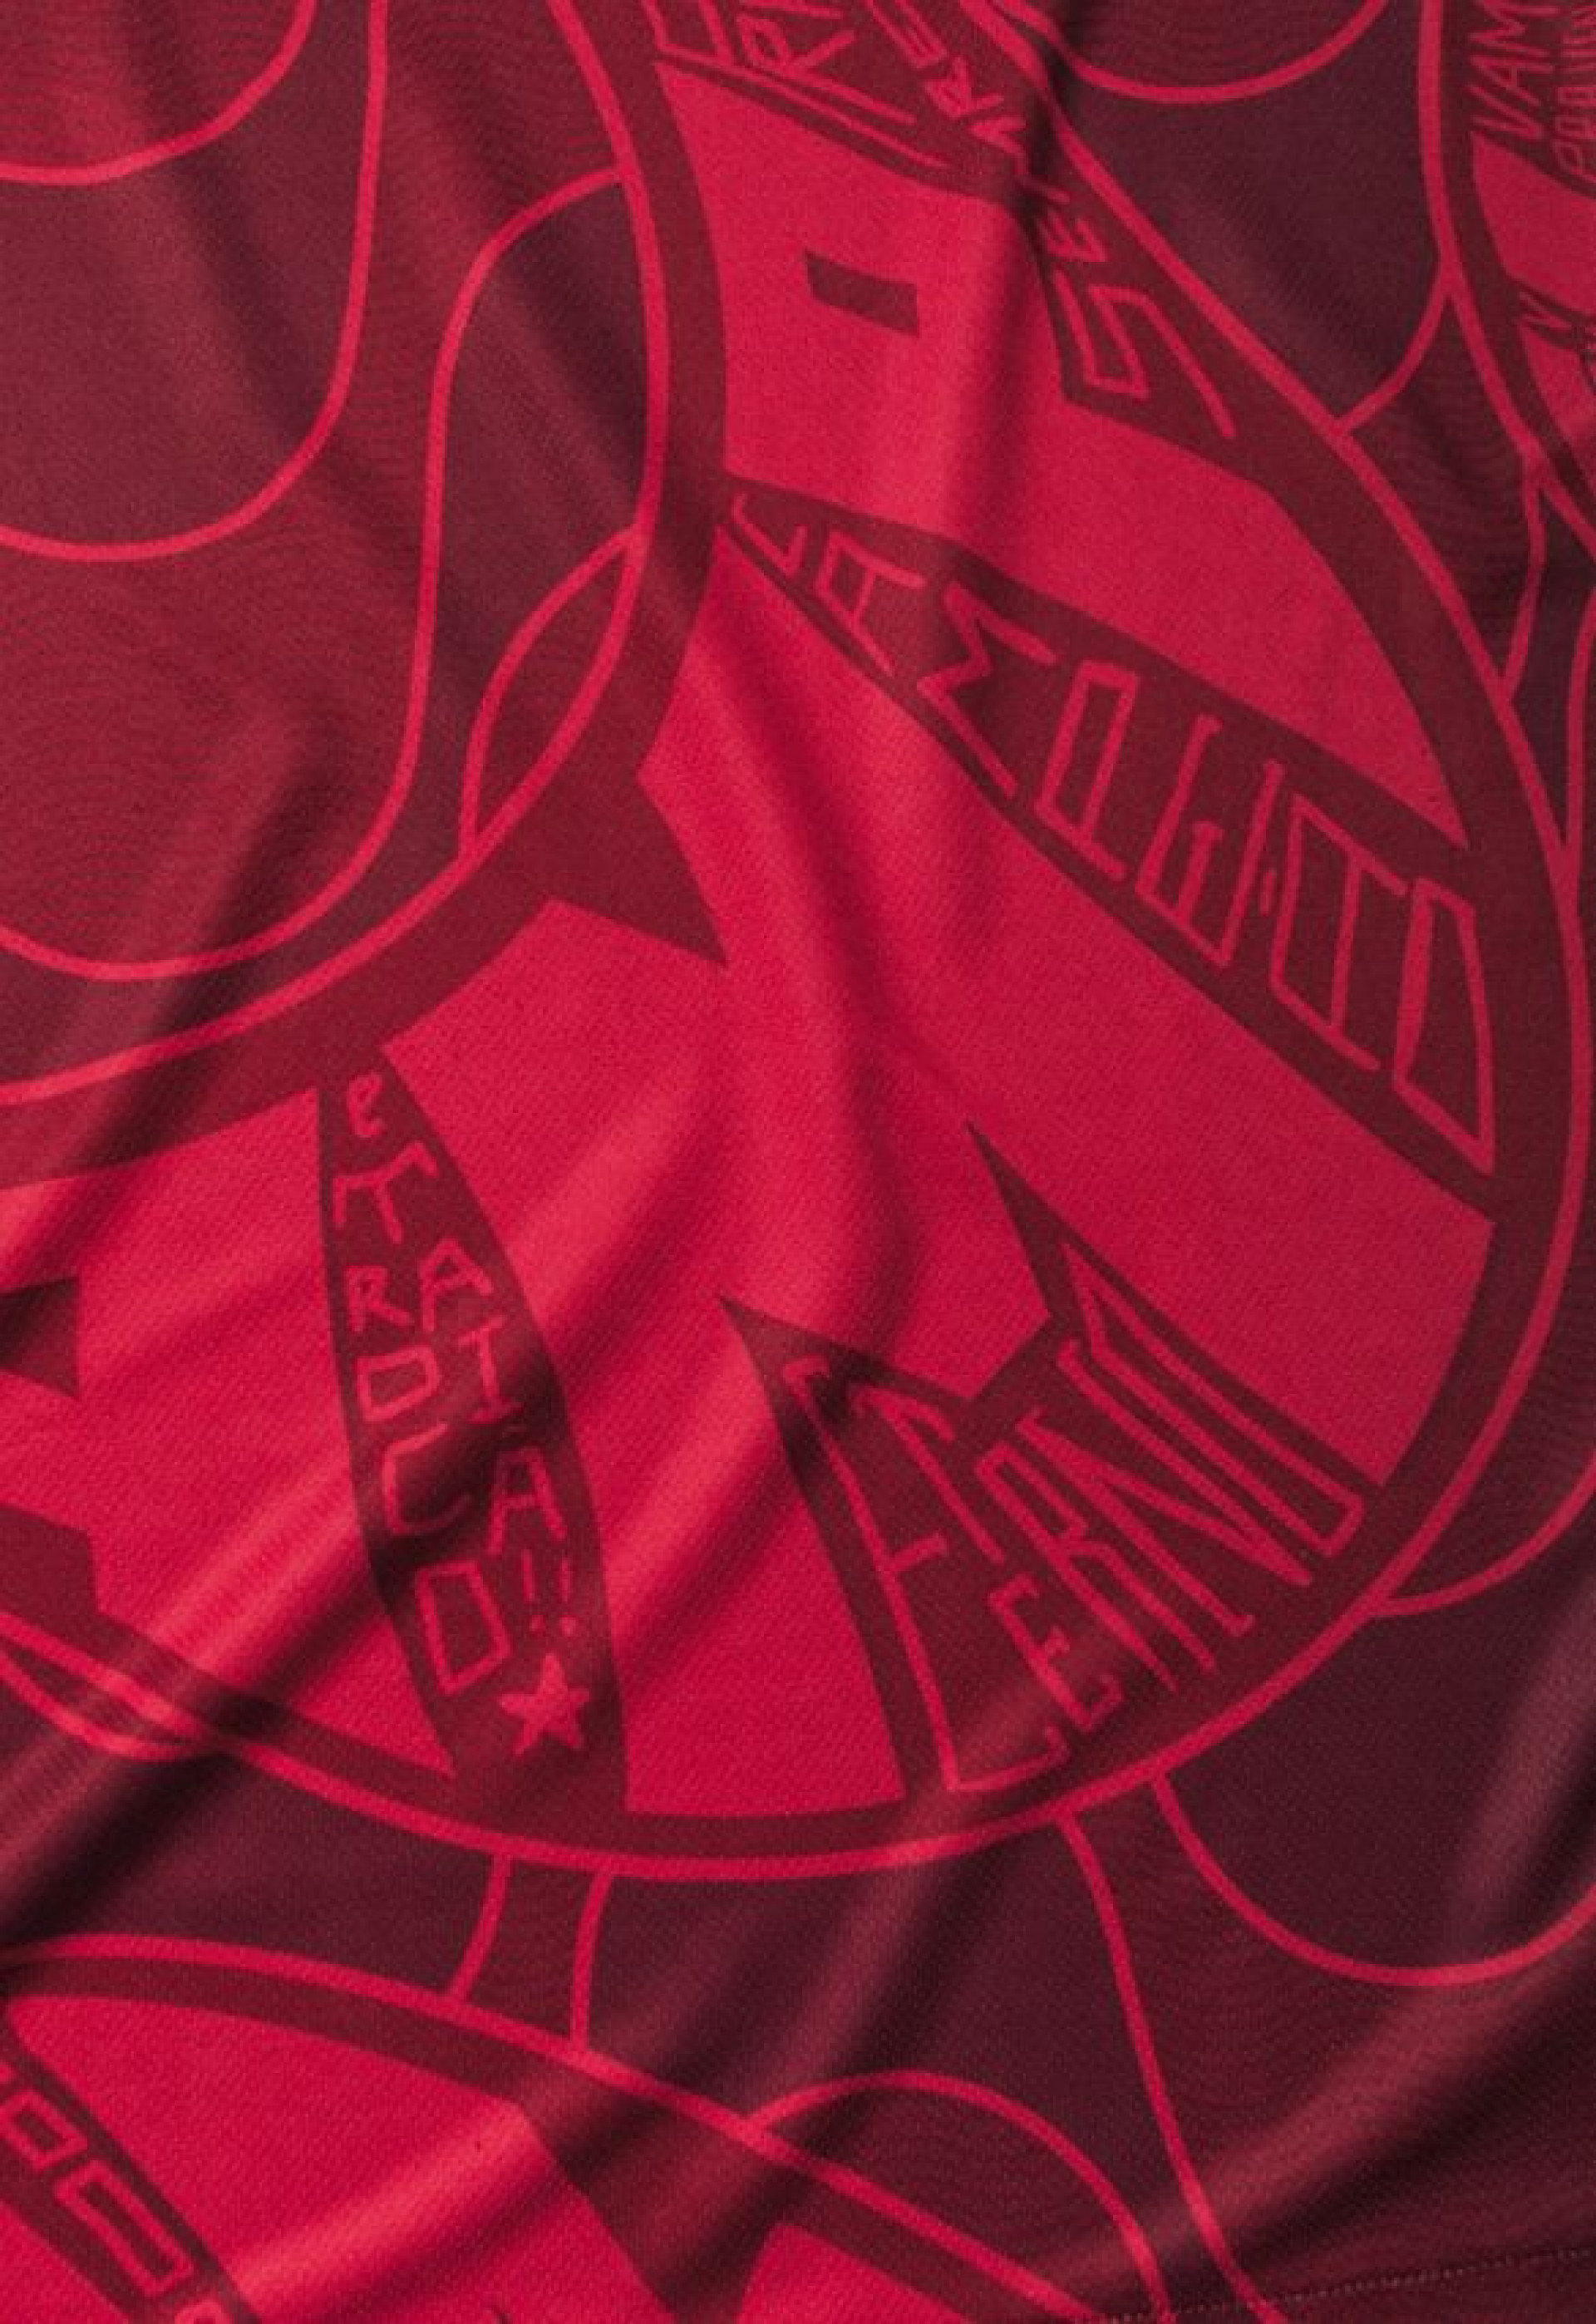 Nova camisa do Fluminense tem edição limitada e foi feita para homenagear a torcida tricolor - Divulgação